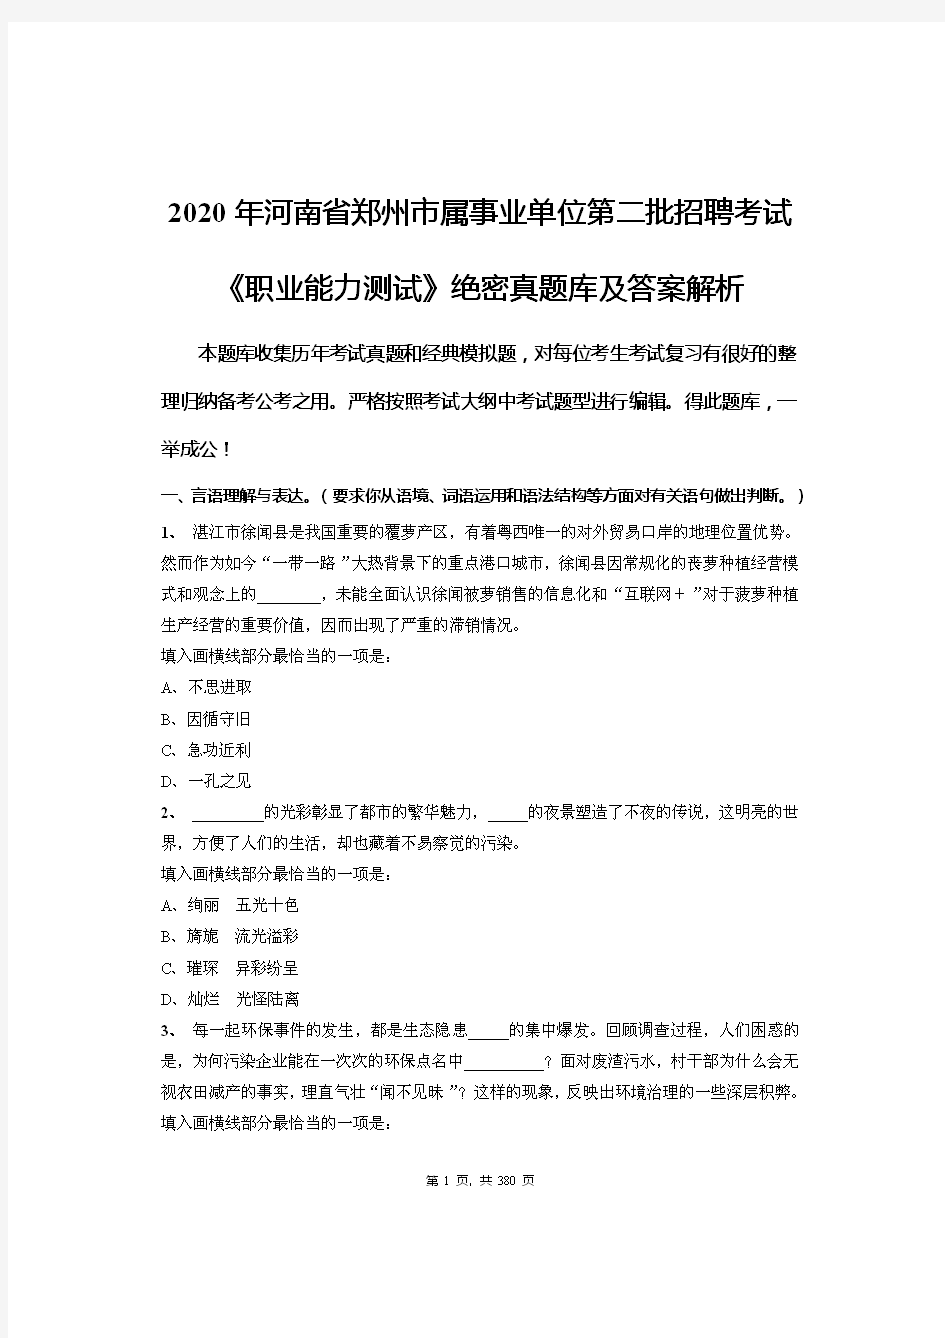 2020年河南省郑州市属事业单位第二批招聘考试《职业能力测试》绝密真题库及答案解析